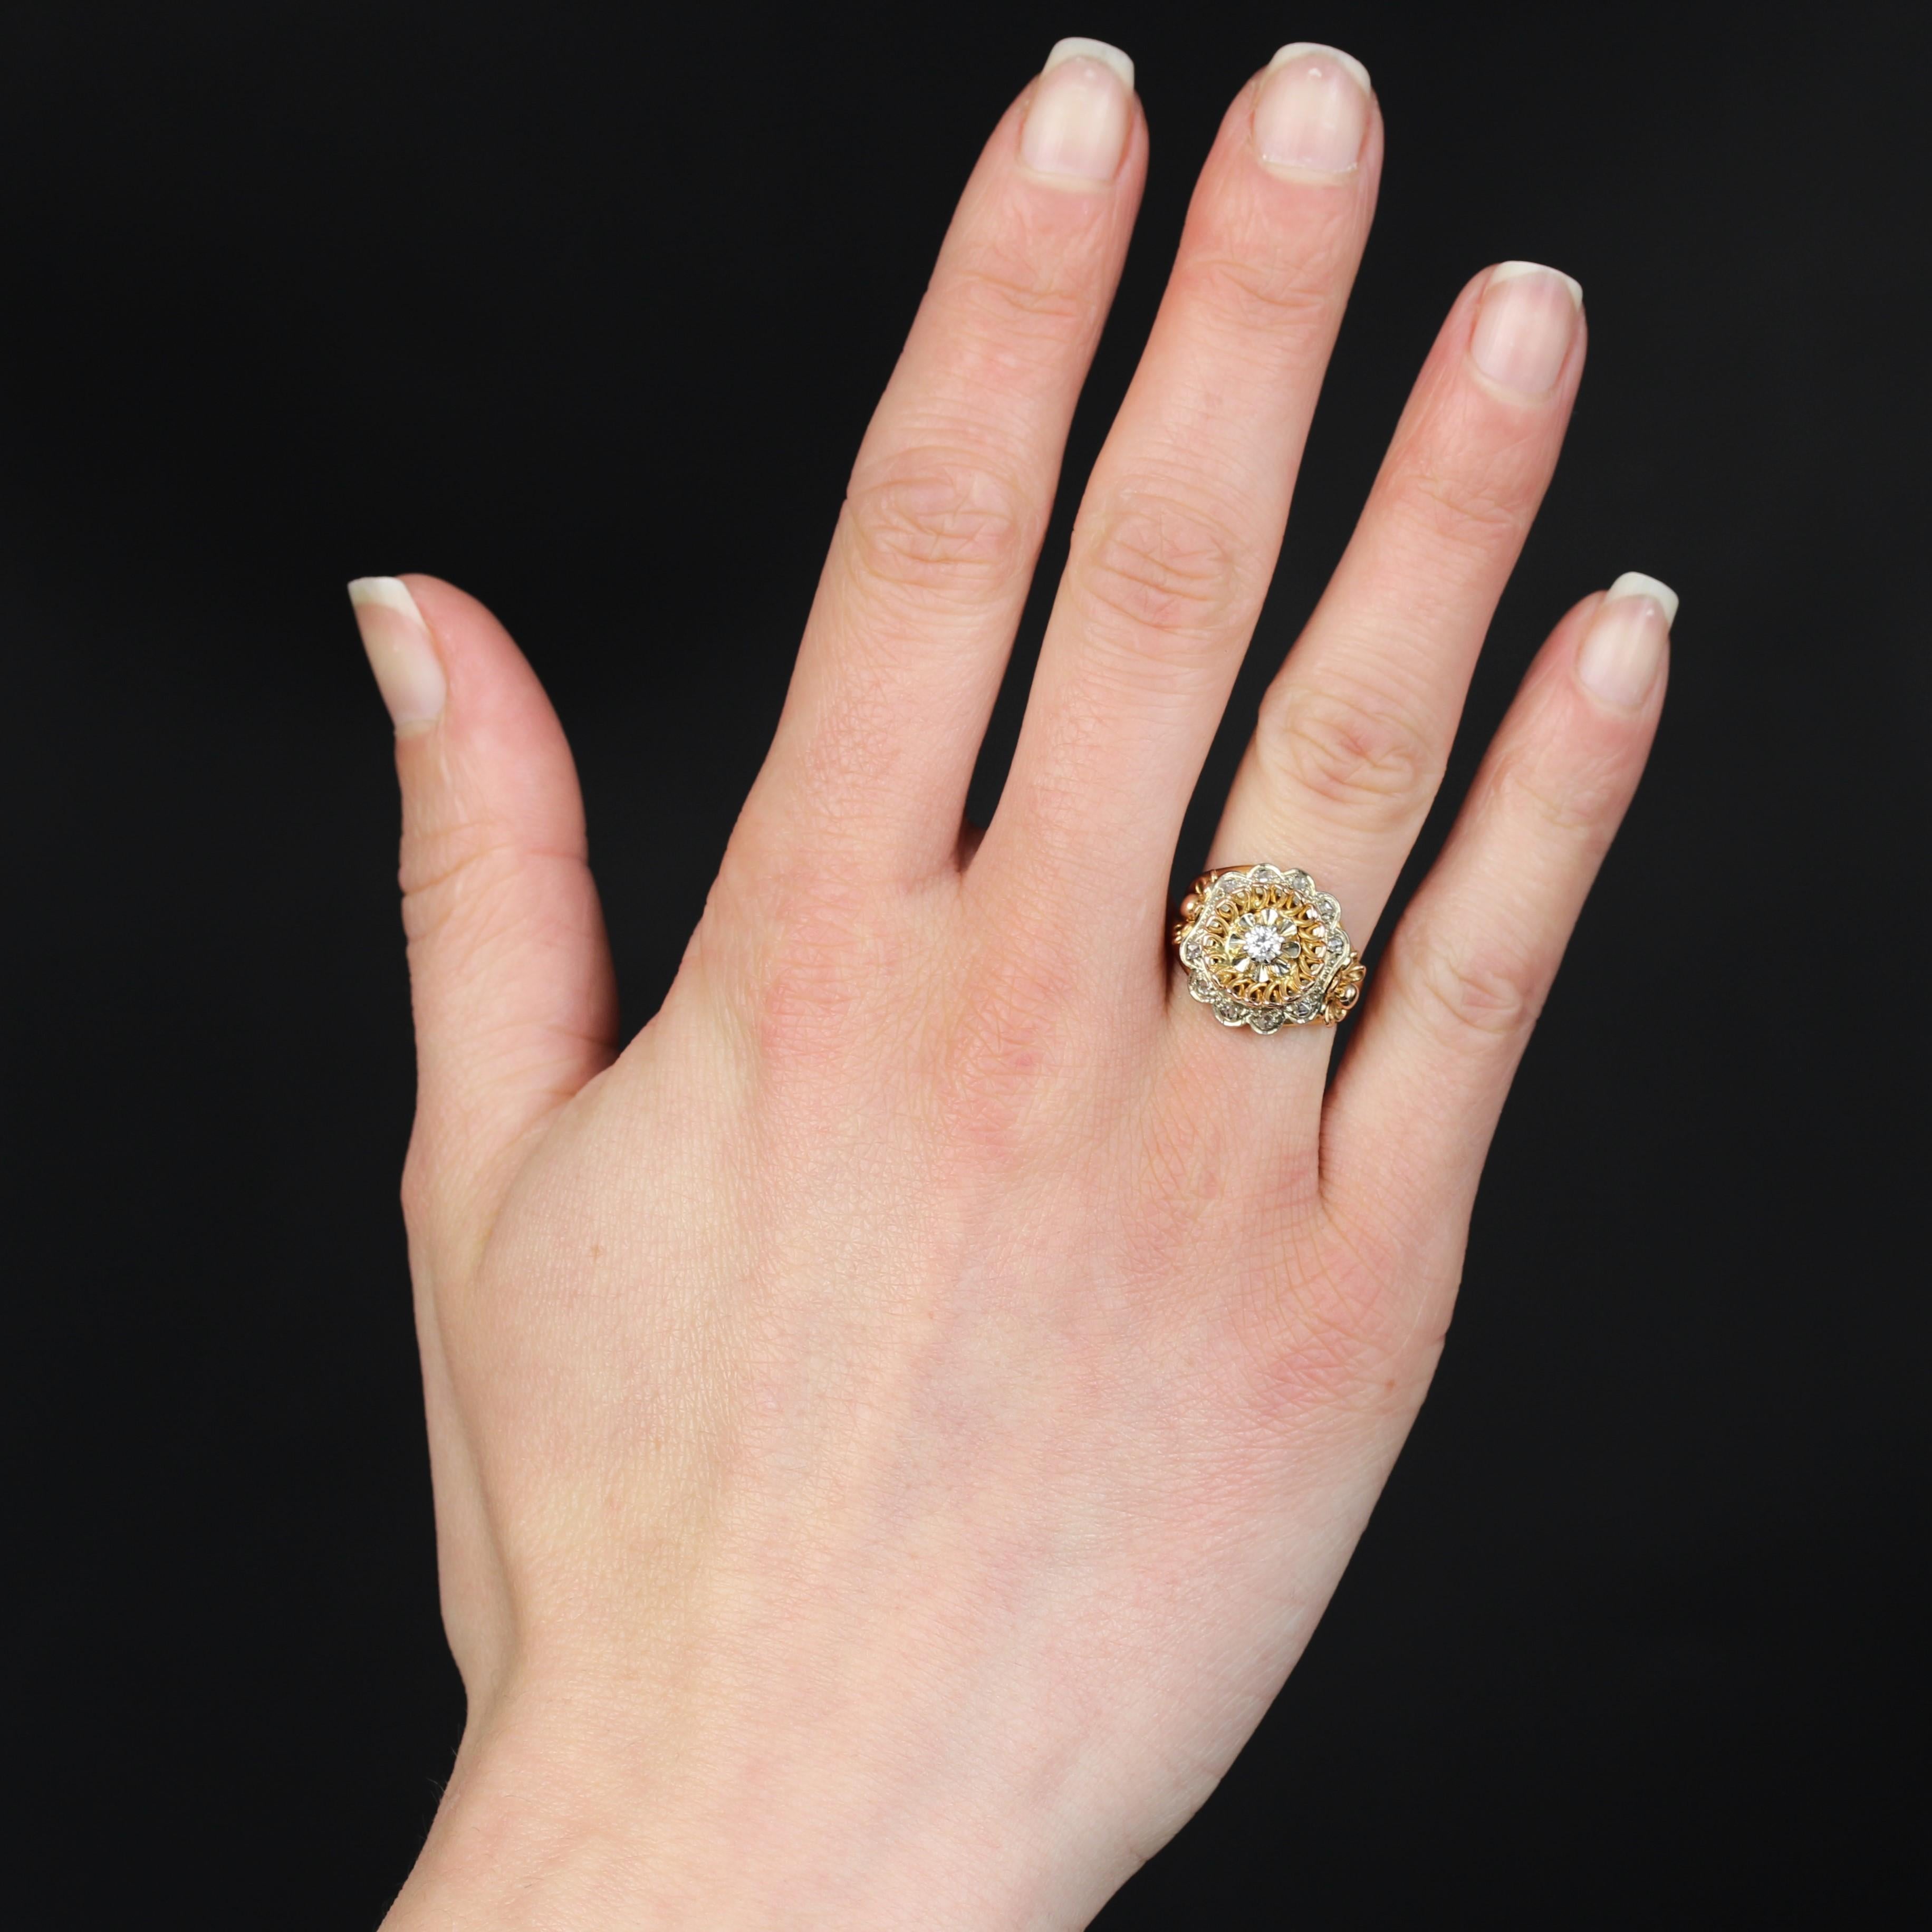 Ring aus 18 Karat Rosé- und Weißgold, Adlerkopfpunze.
Dieser Ring im Vintage-Stil zeichnet sich durch eine runde, durchbrochene Fassung eines modernen Diamanten im Brillantschliff aus, der in Krallen in einem Kranz aus Golddrähten gehalten wird. Das